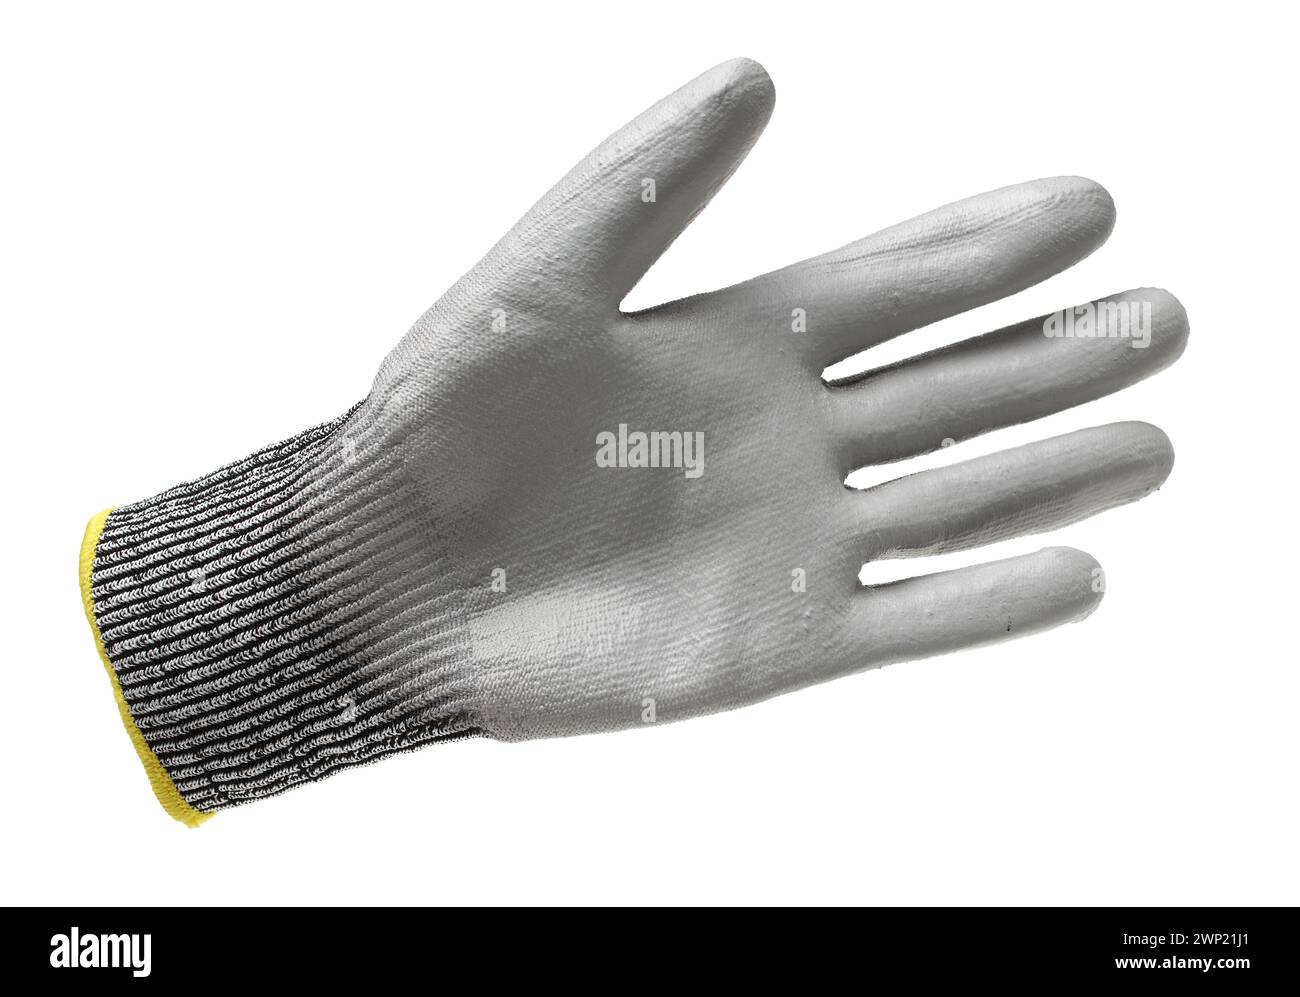 Coppia di guanti da lavoro in tessuto grigio con strato protettivo in gomma isolato su sfondo bianco con ombra morbida Foto Stock